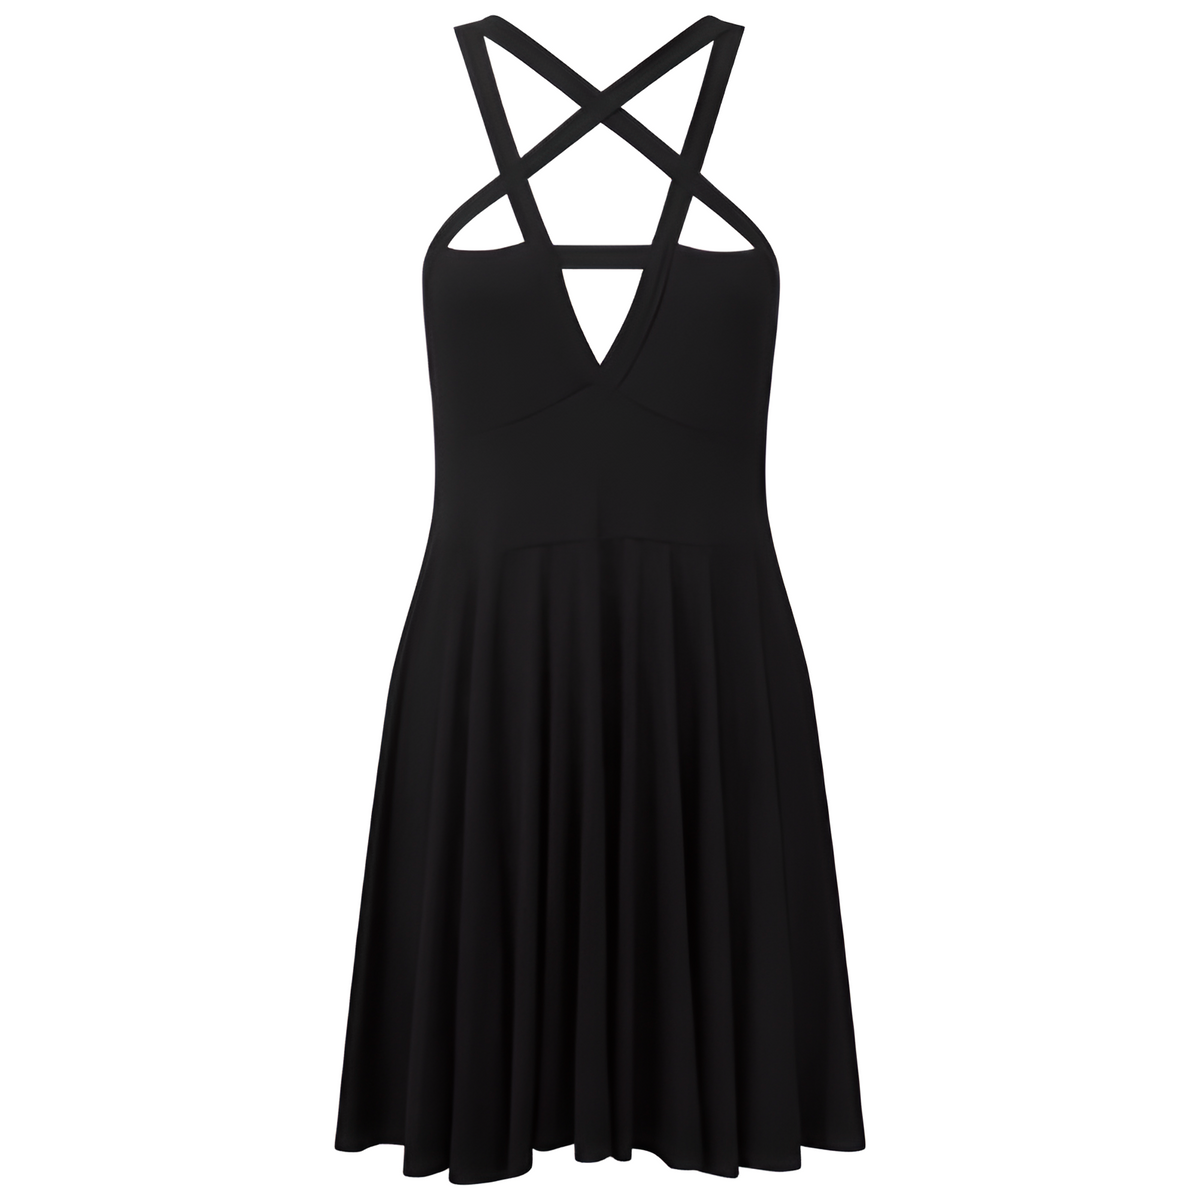 Sleek Pleated Sleeveless Summer Dress - Black / S - Mini